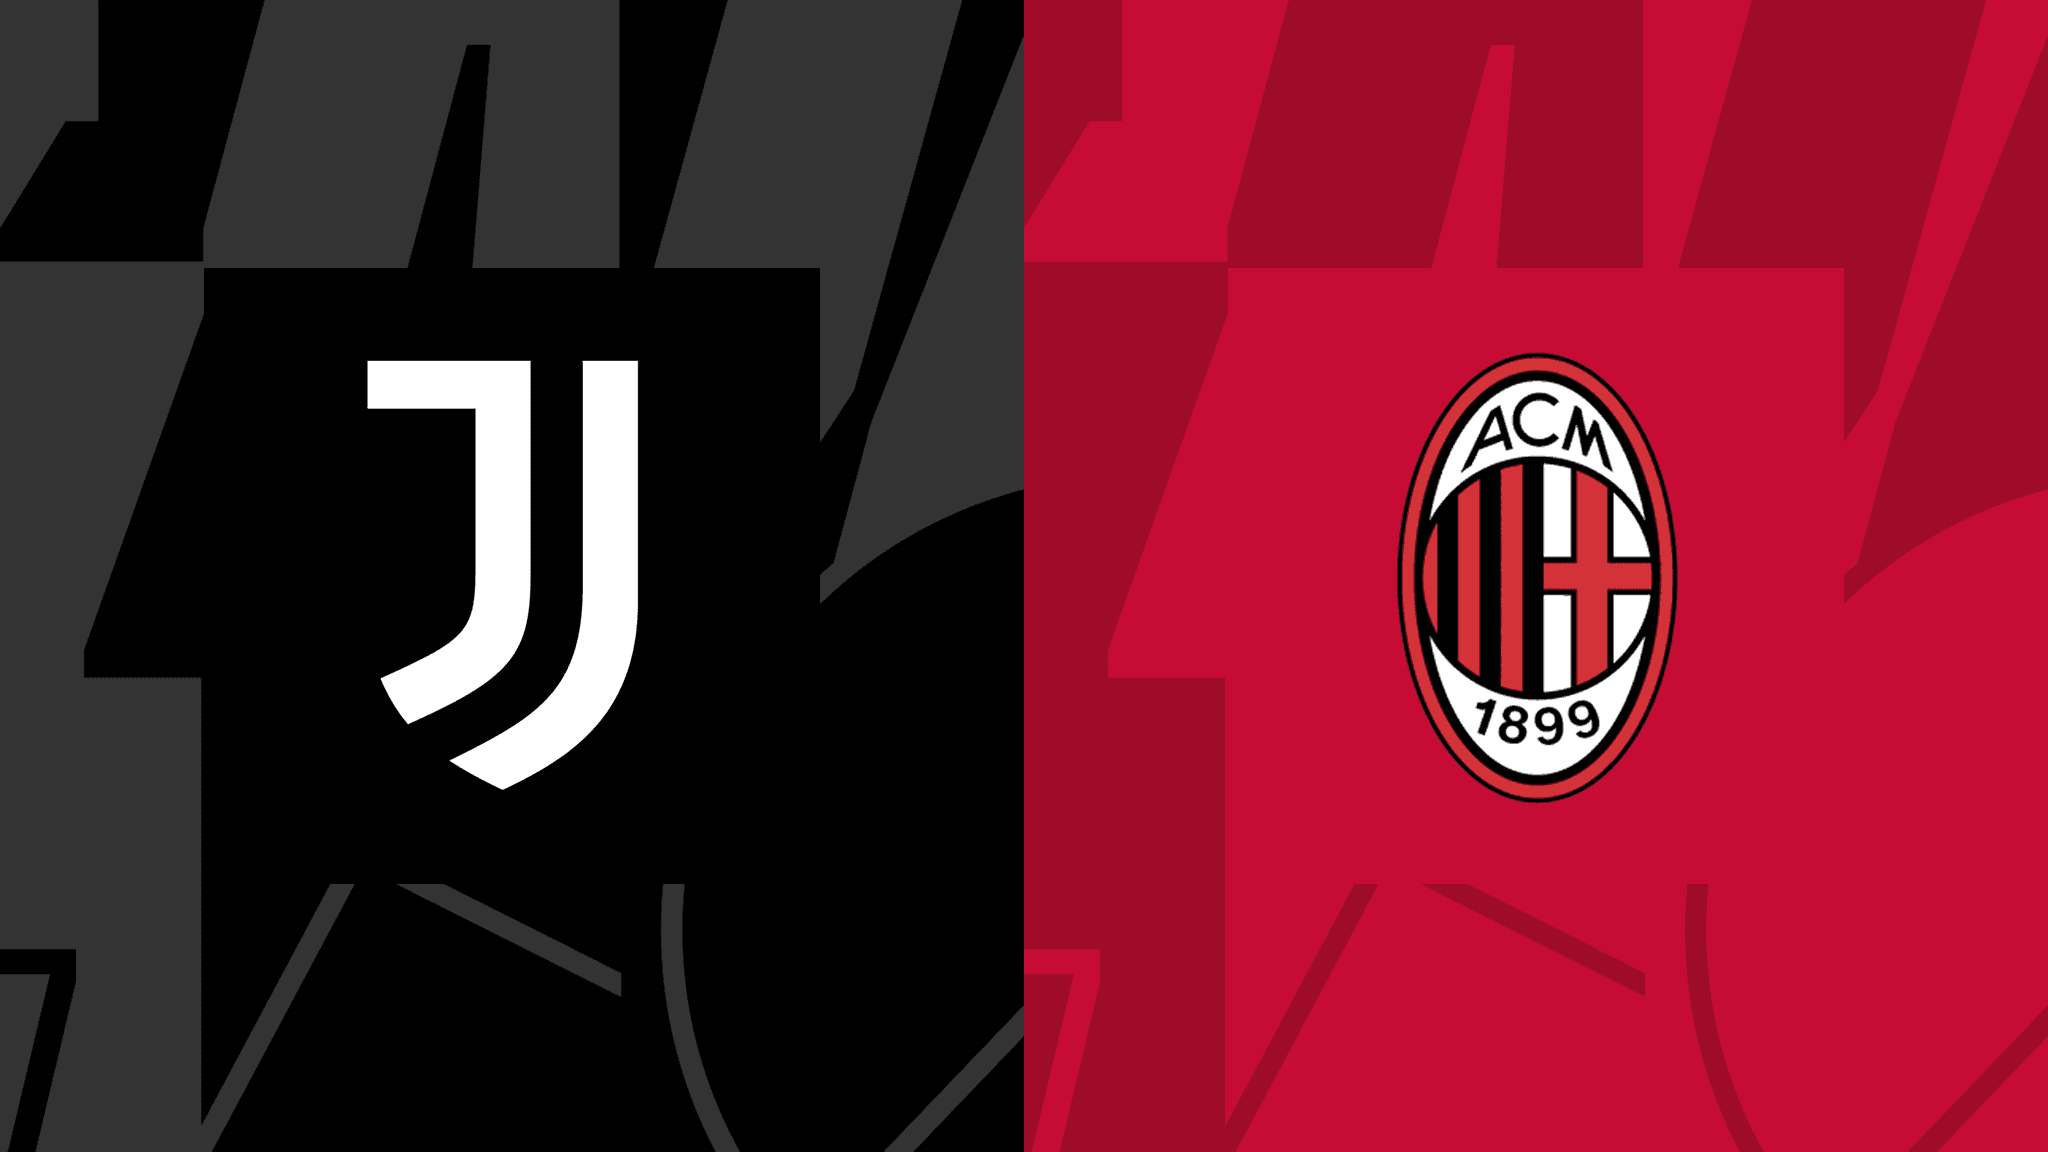 Juventus vs AC Milan (27 April, 18:00)